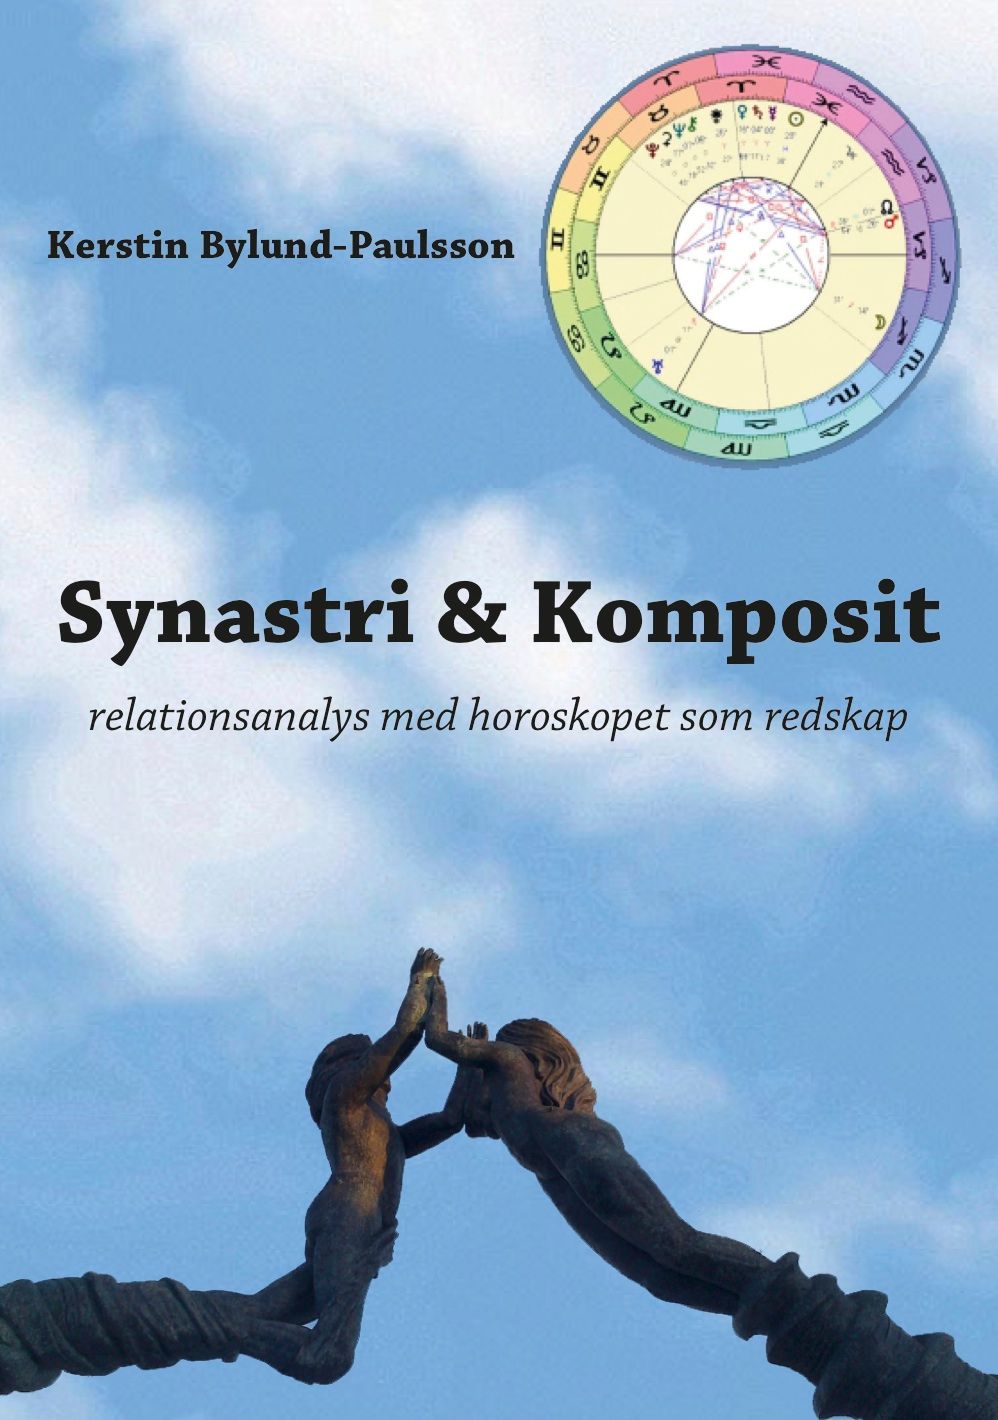 SYNASTRI OCH KOMPOSIT, e-bog af Kerstin Bylund-Paulsson